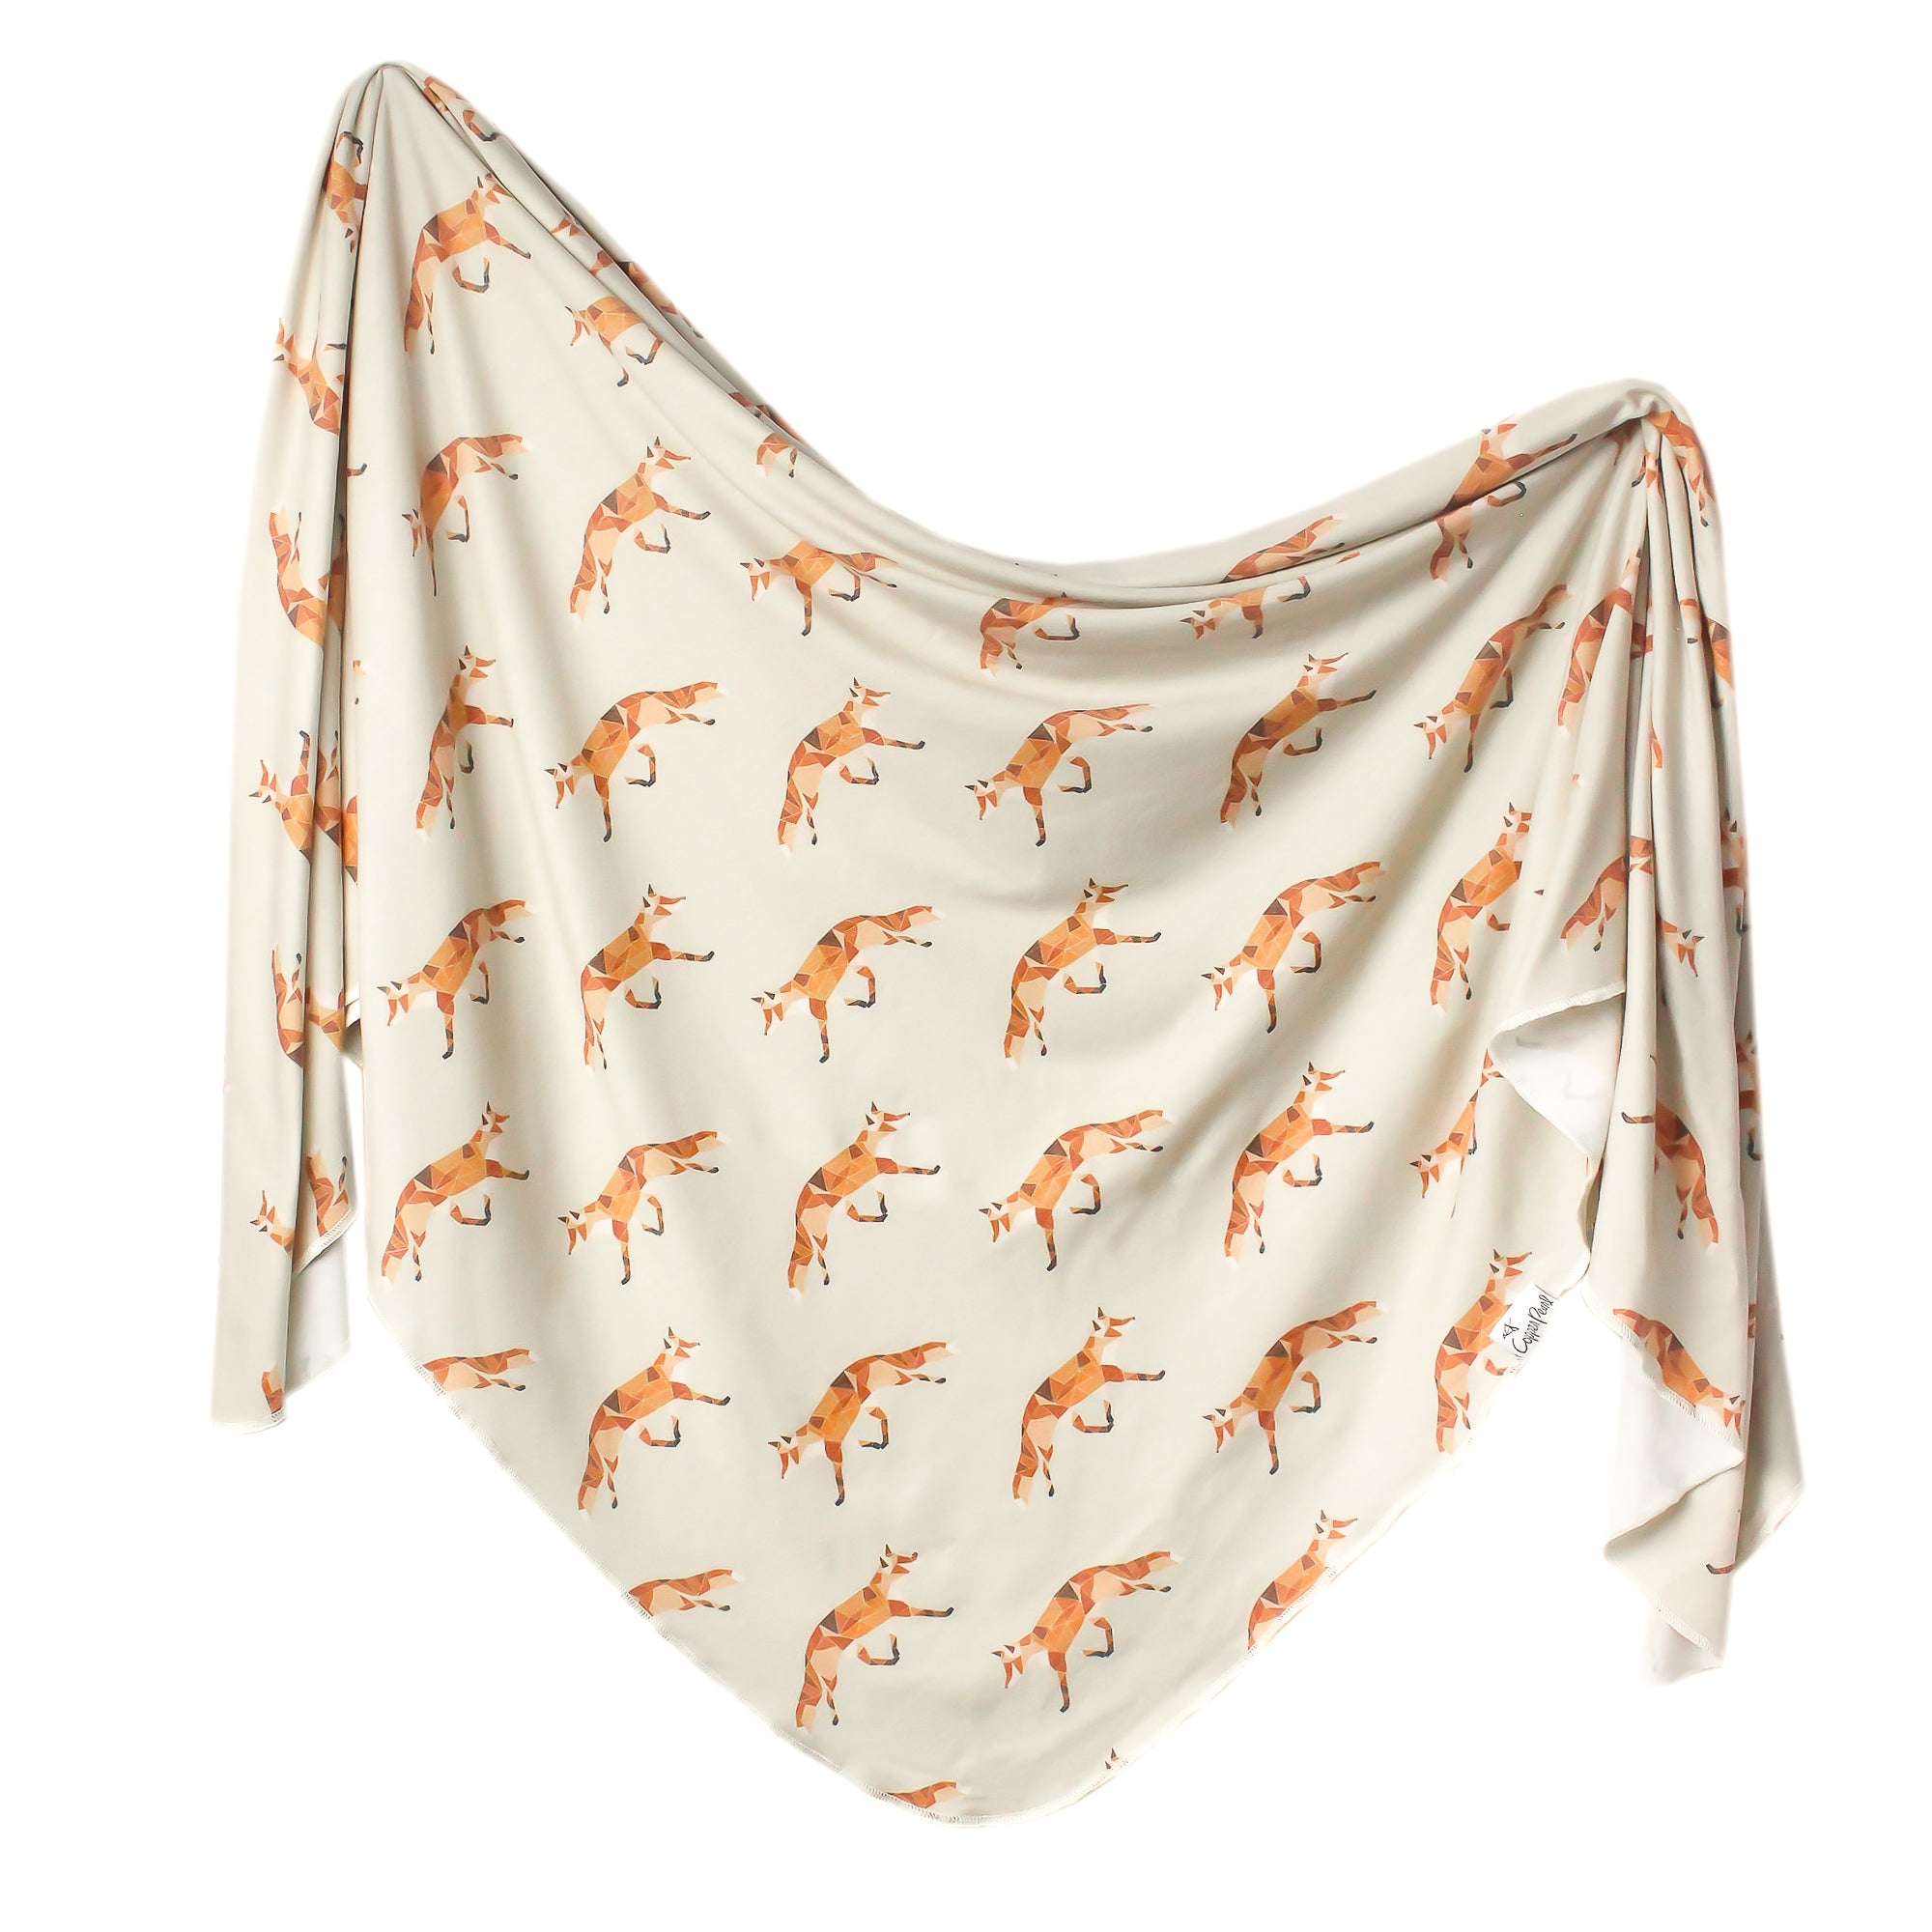 Knit Swaddle Blanket - Swift